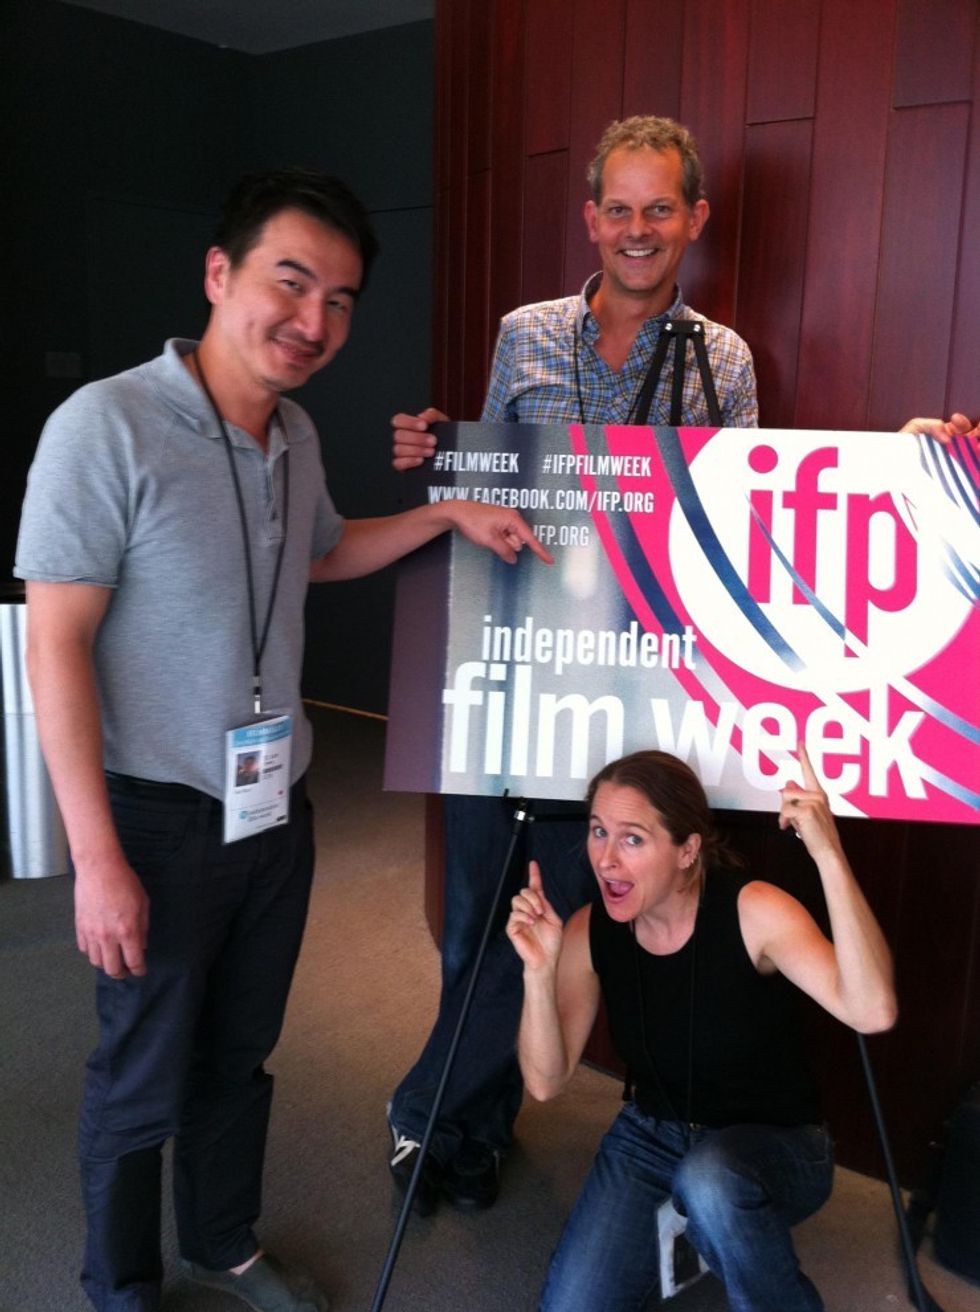 Ndf-independent-film-week